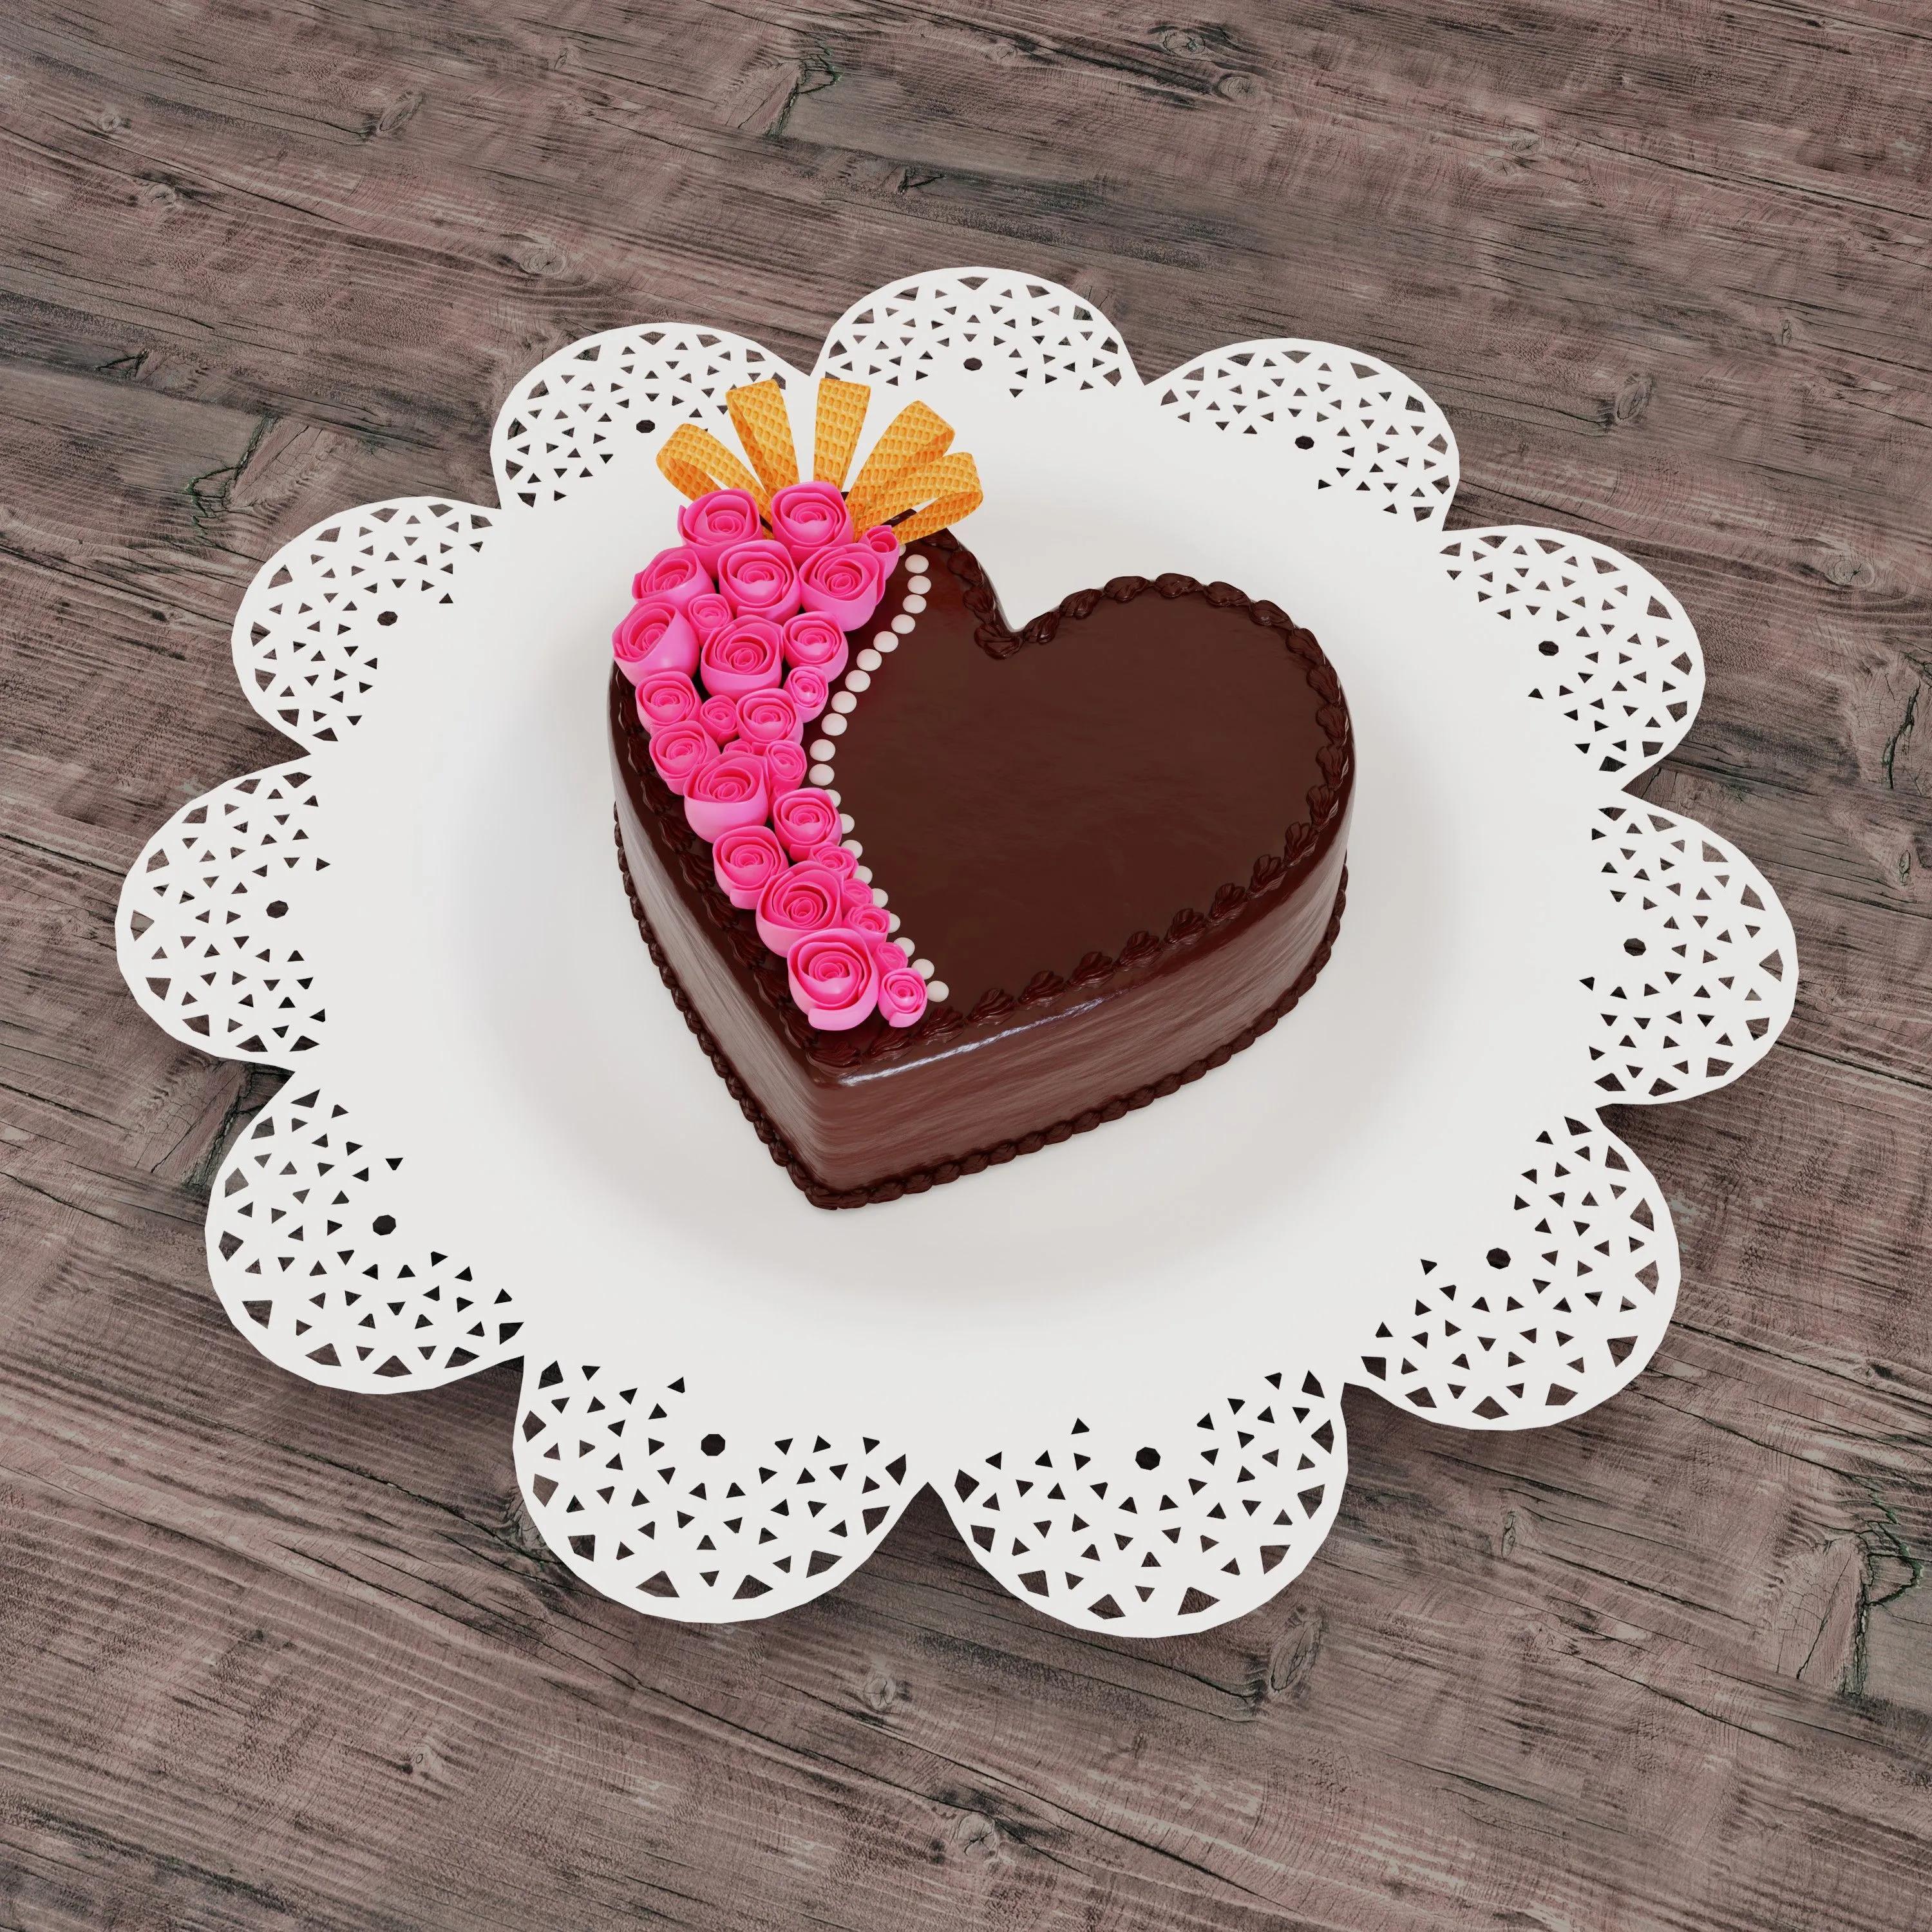 Heart shaped cake | Heart shaped cakes, Cake, Chocolate glaze